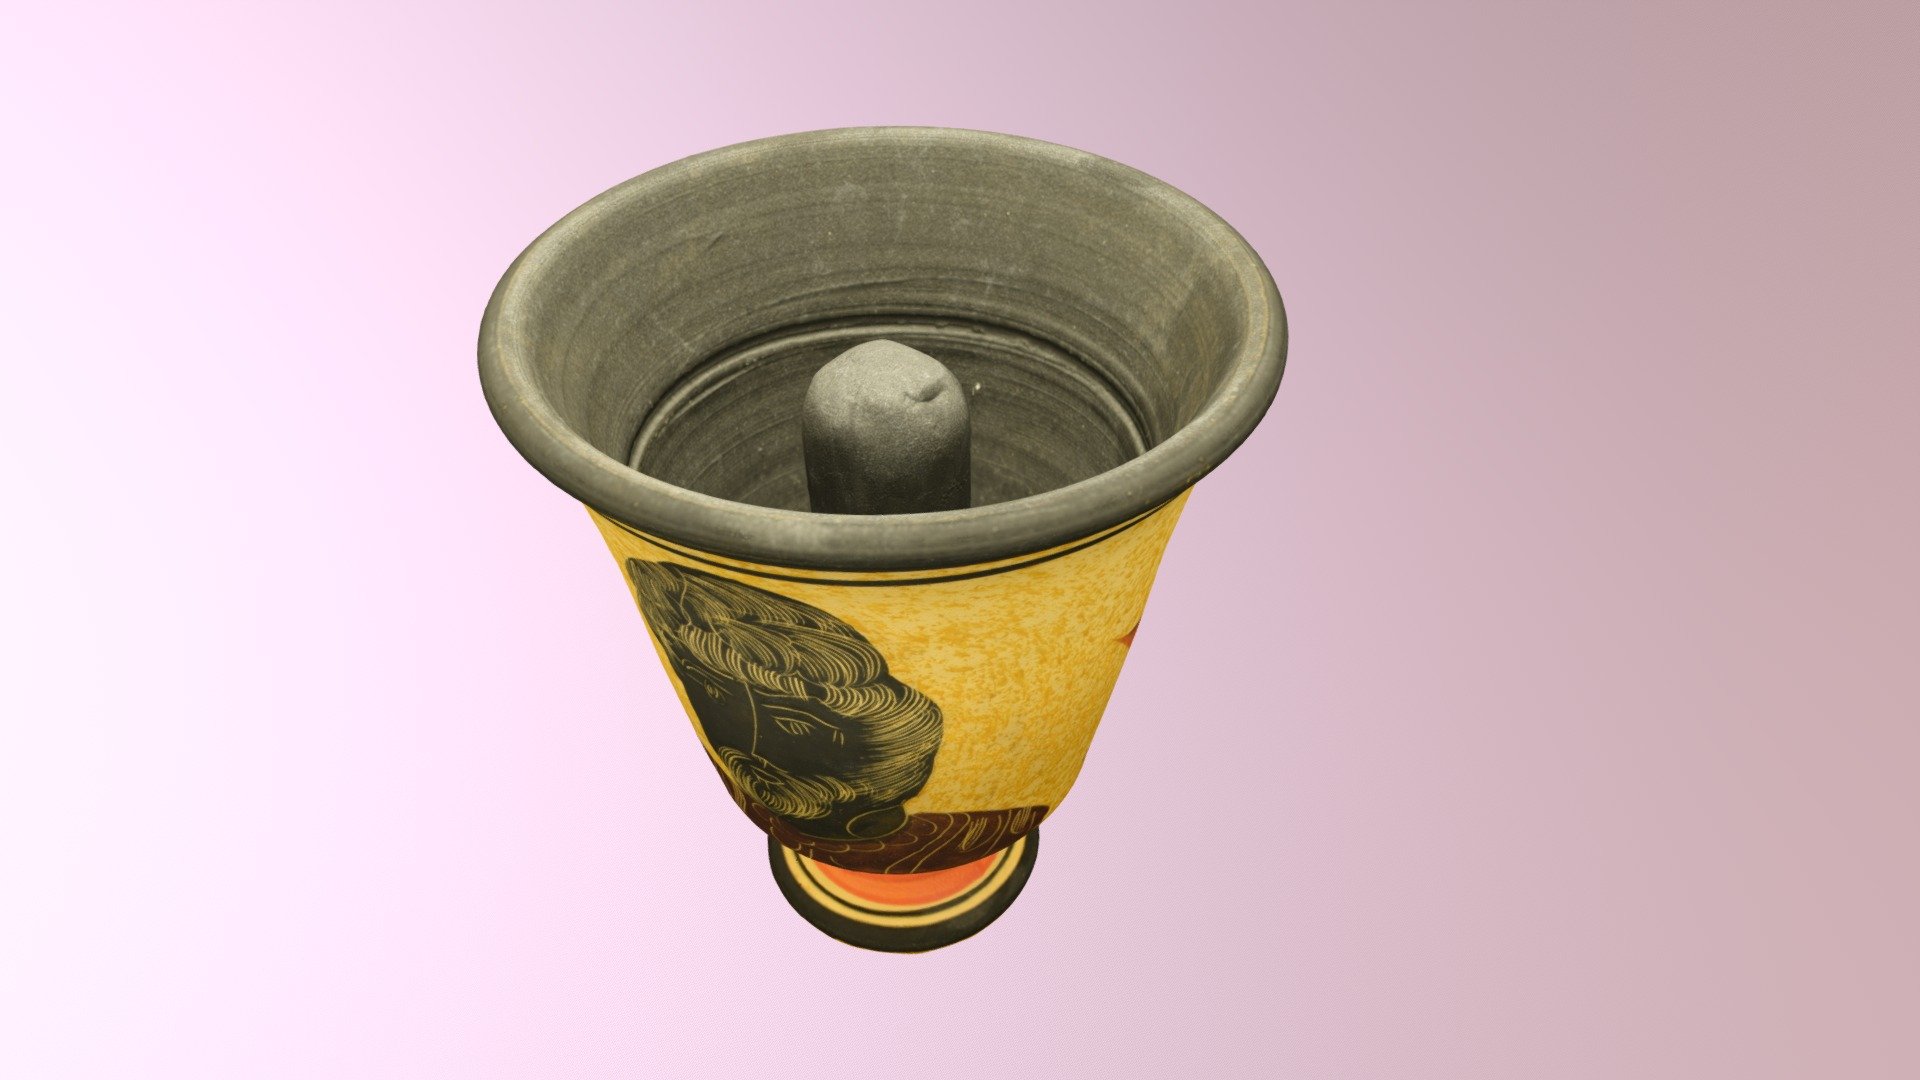 Pythagorean Cup replica